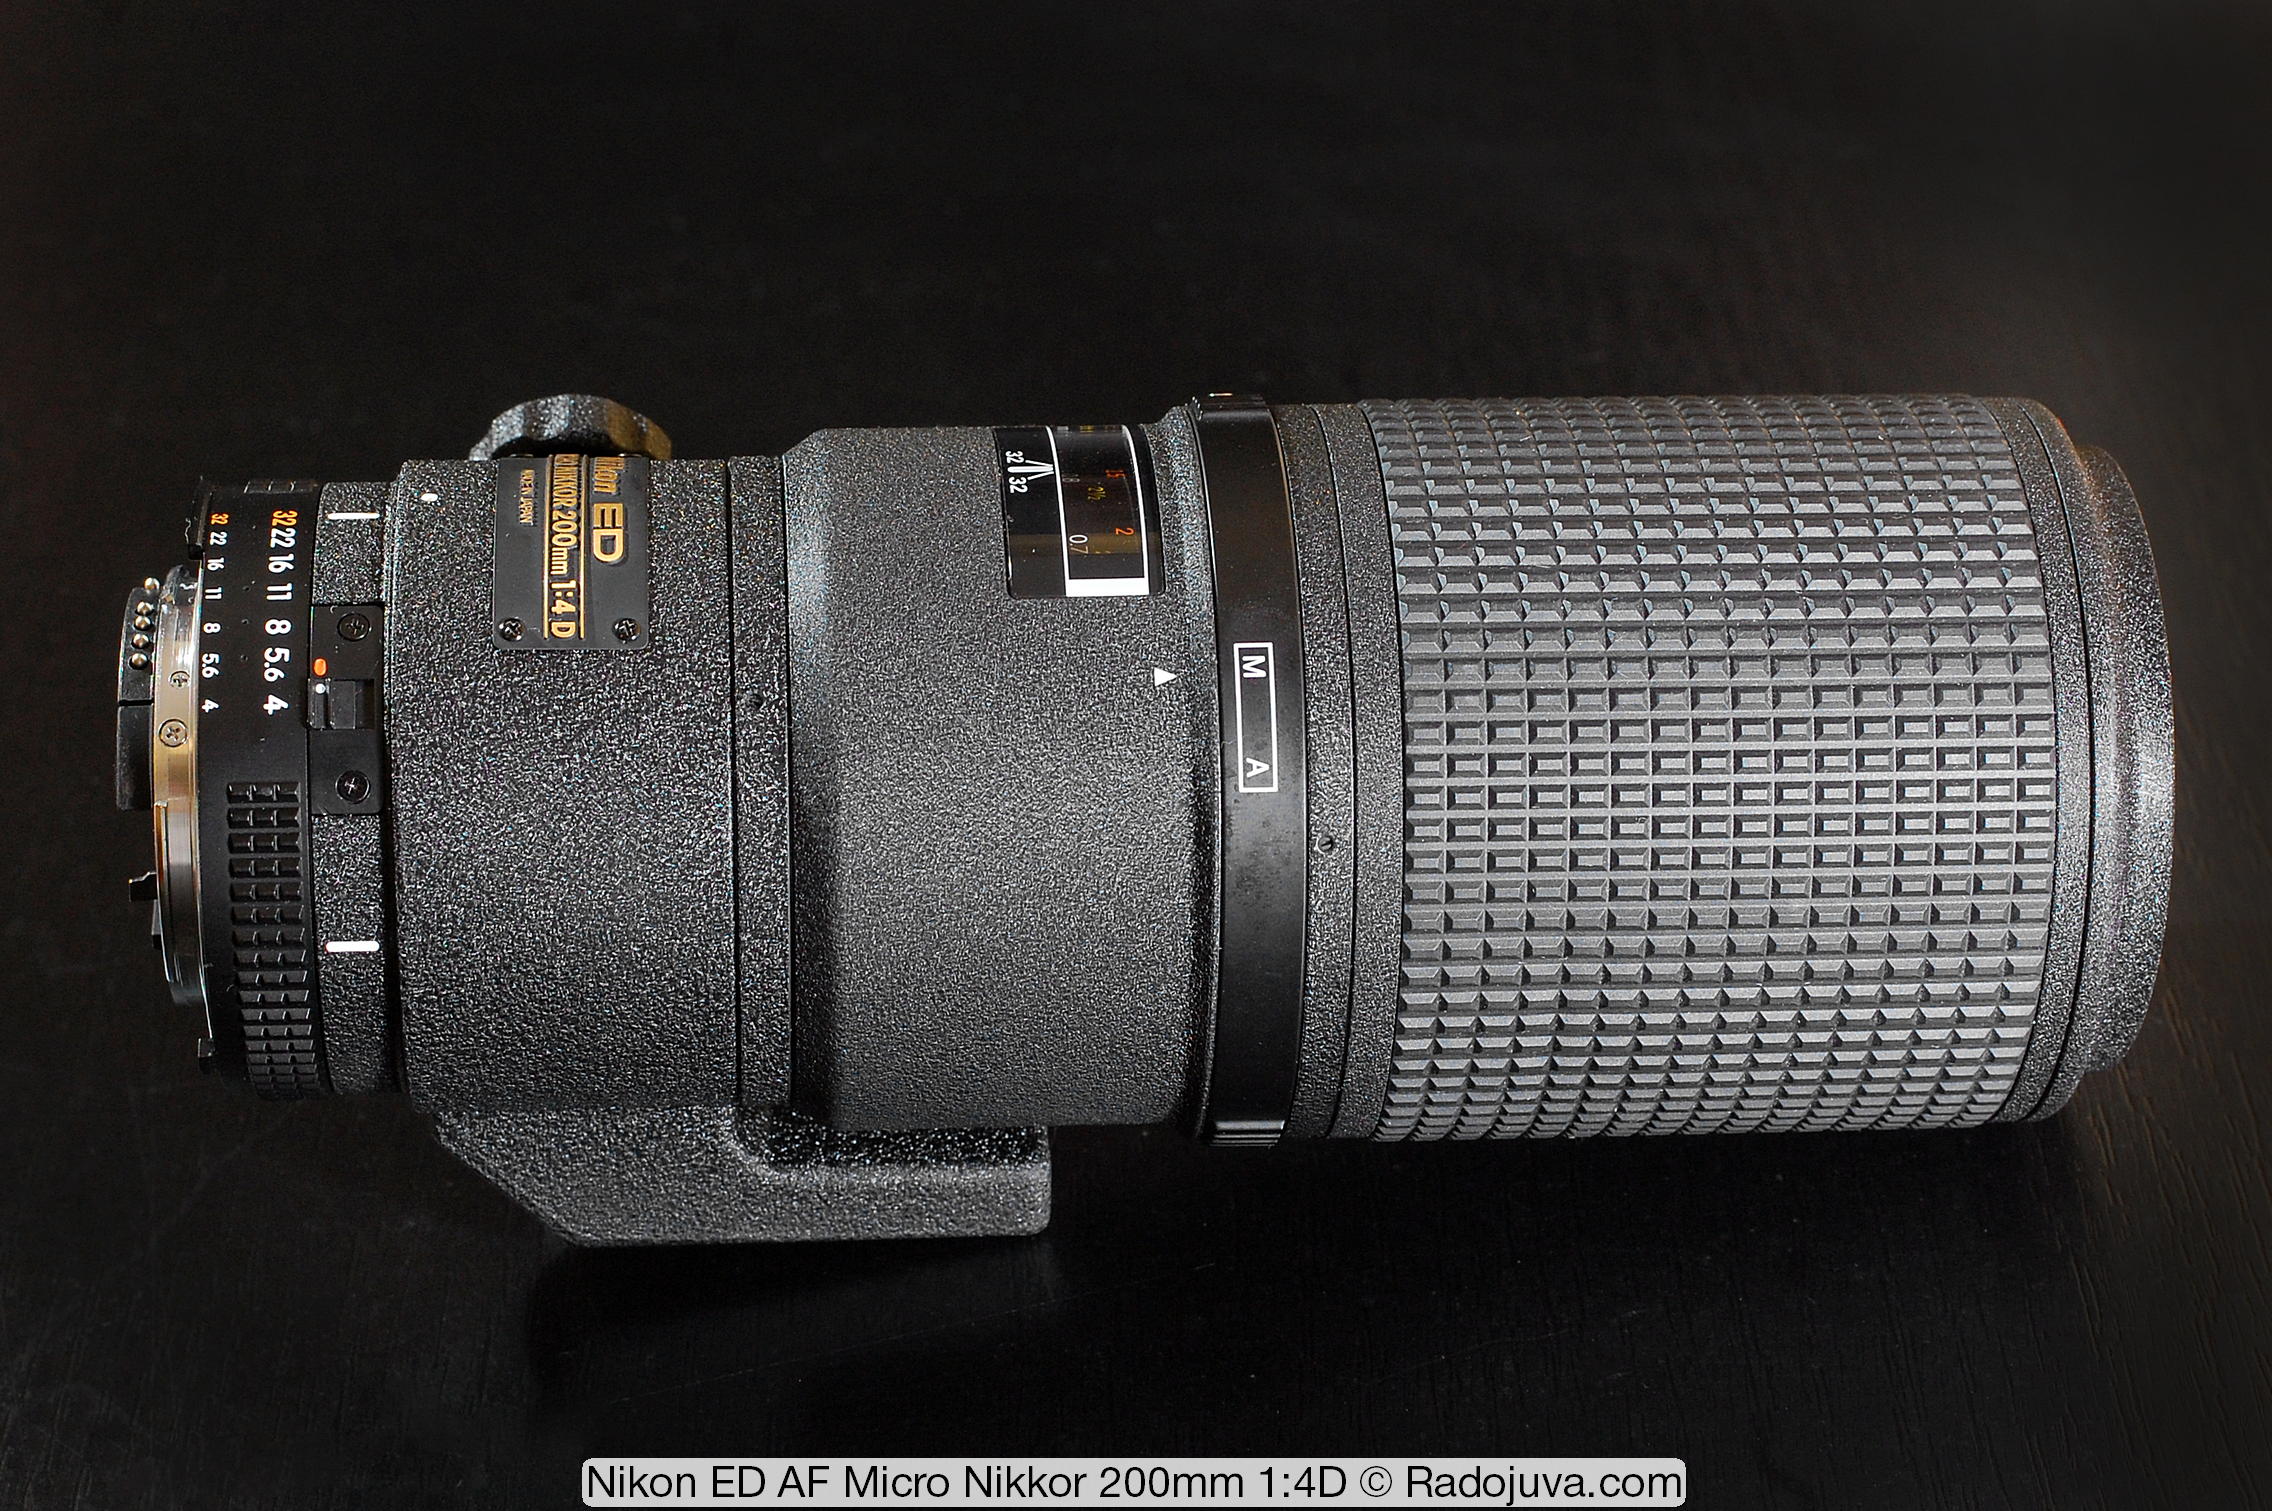 nikon-ed-af-micro-nikkor-200mm-4d-lens-test-review-8